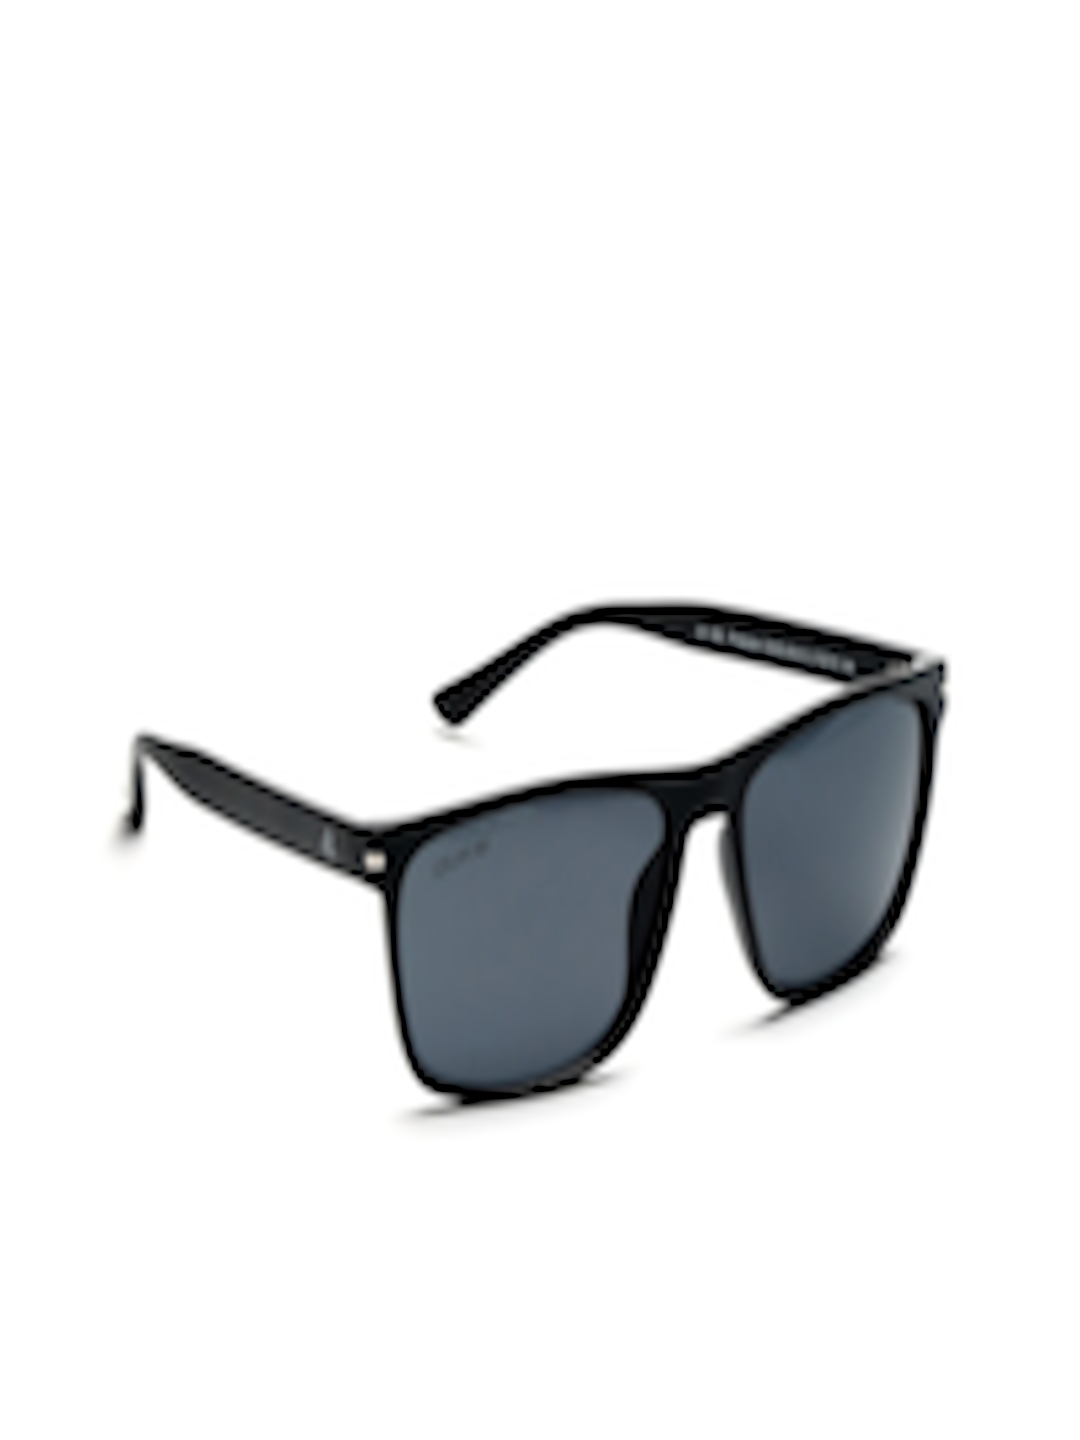 Buy Duke Unisex Grey Lens & Black Rectangle Sunglasses With UV ...